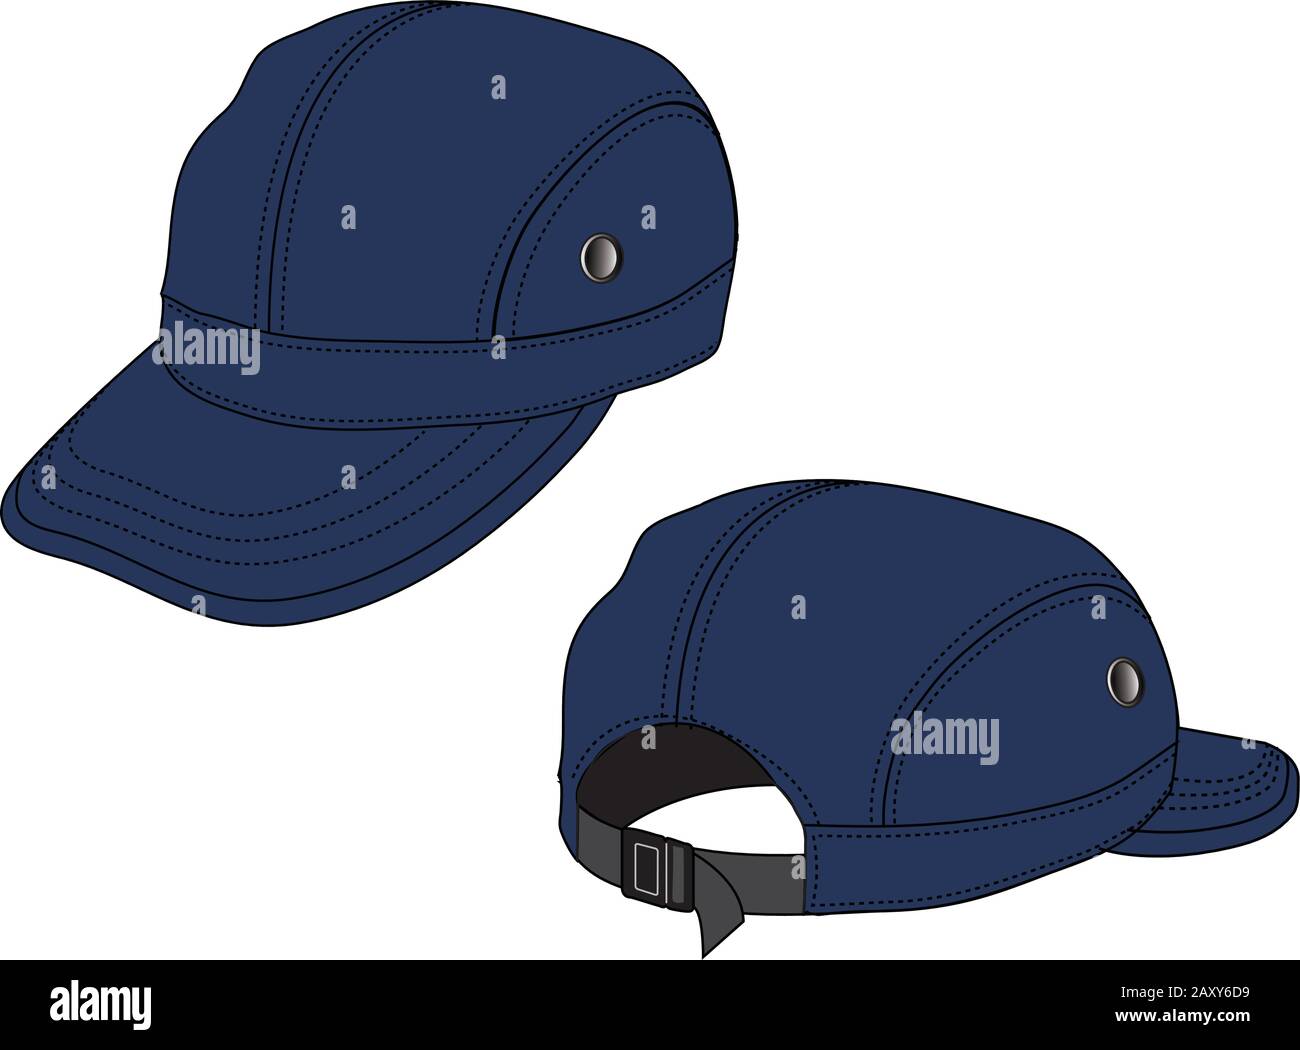 Vector Illustration of baseball cap (headgear) Stock Vector